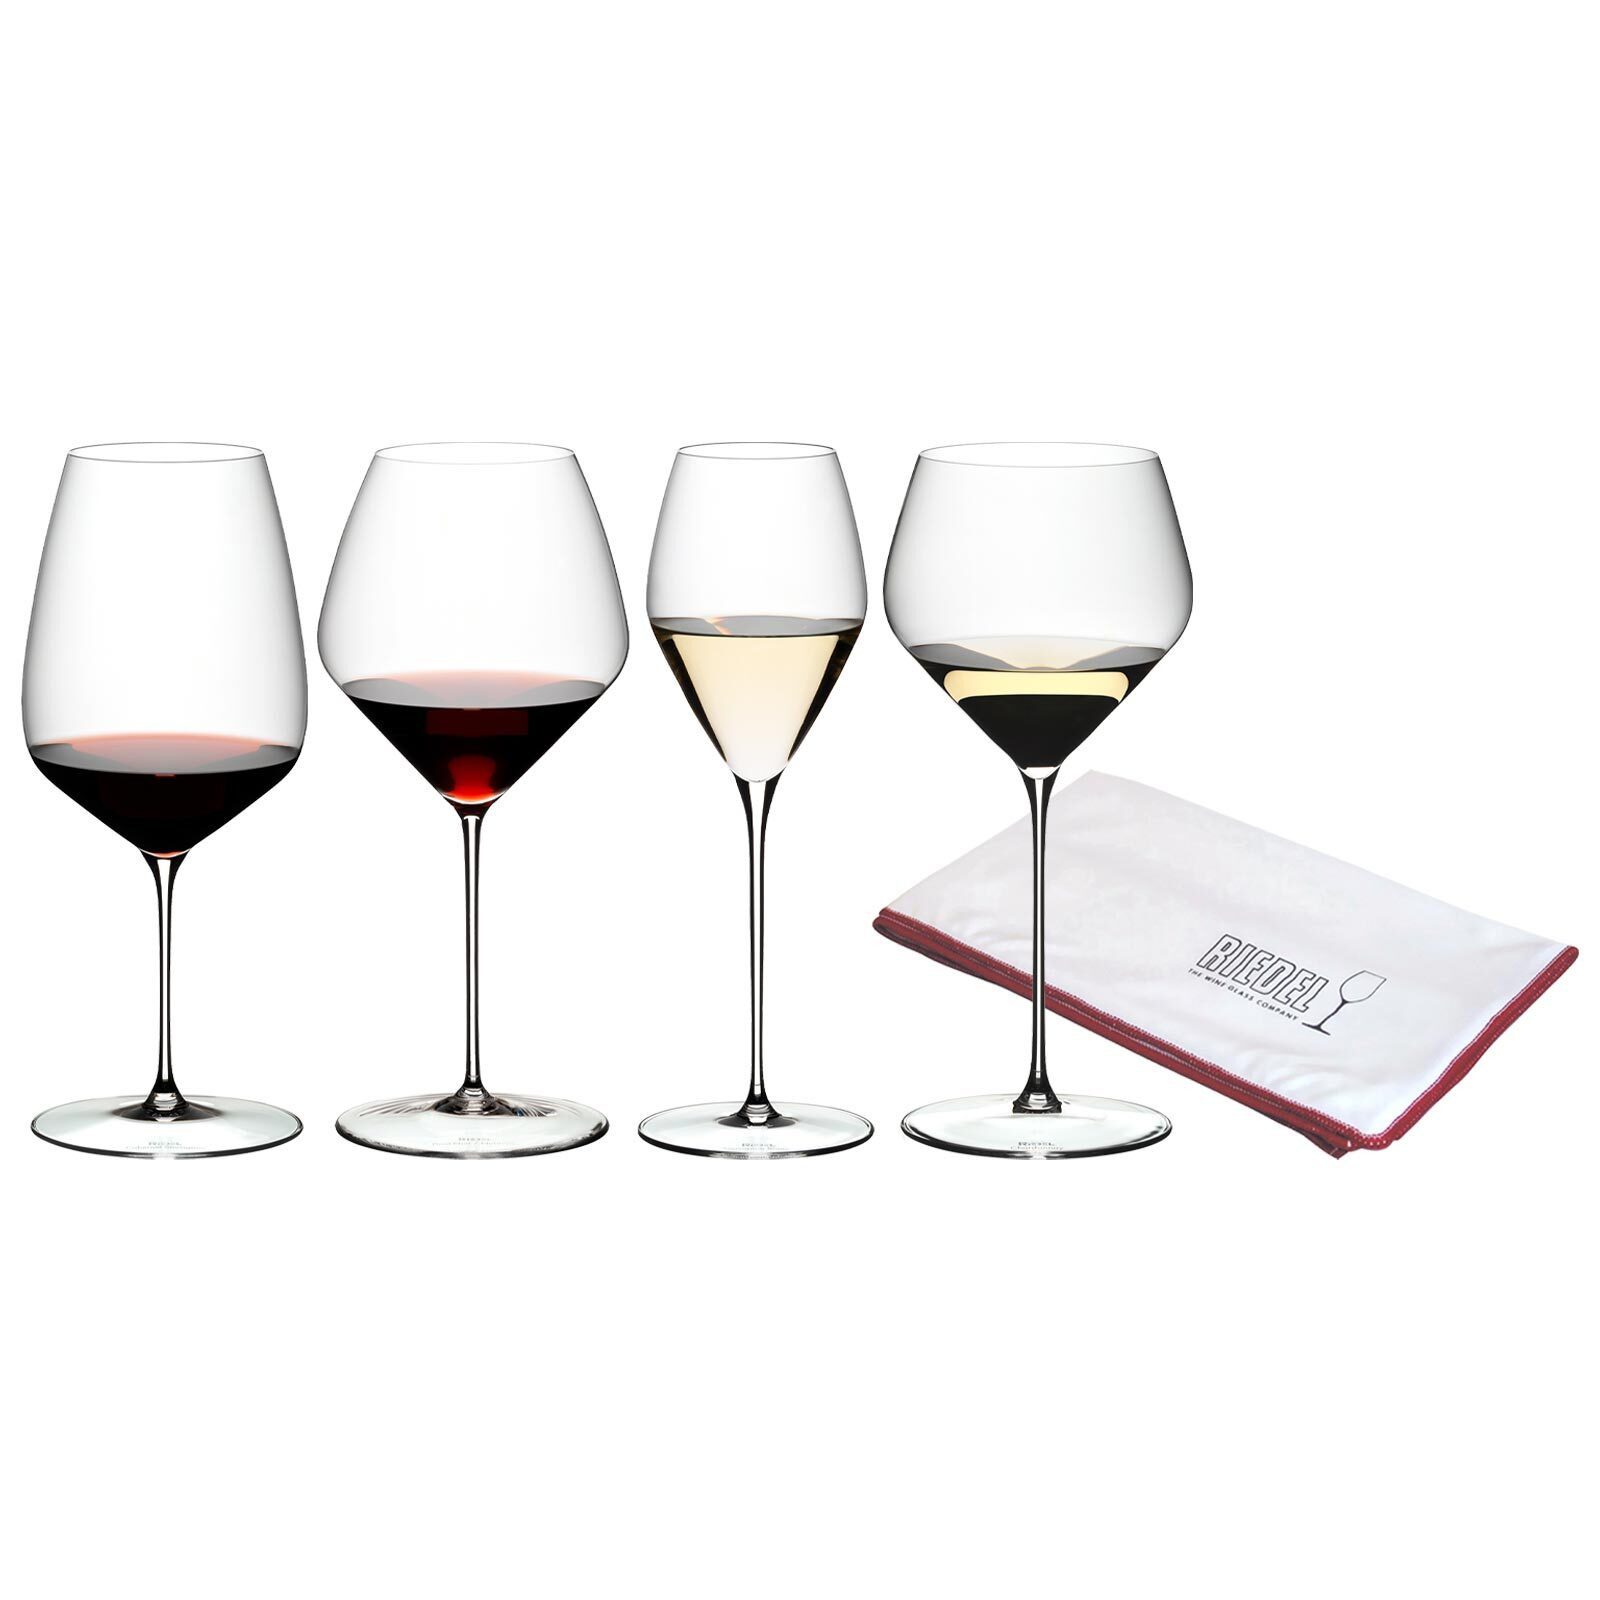 RIEDEL THE WINE GLASS COMPANY Weinglas Veloce Verkostungsset Gläserset + Poliertuch, Glas